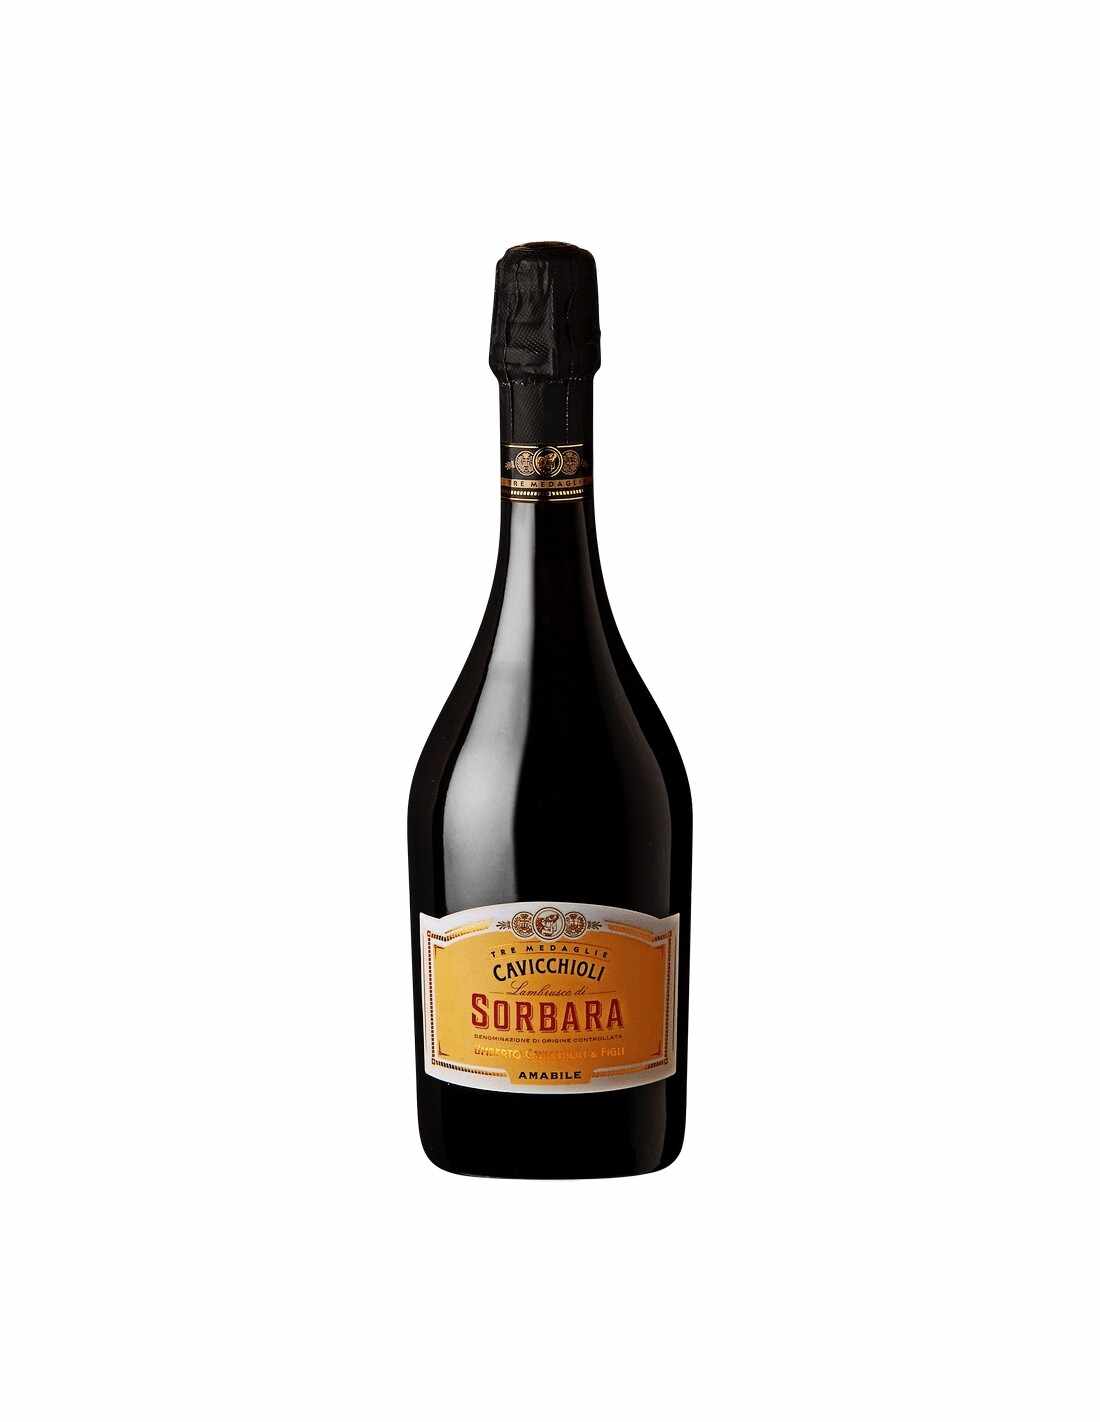 Vin frizzante Cavicchioli Sorbara Amabile, 0.75L, 8% alc., Italia